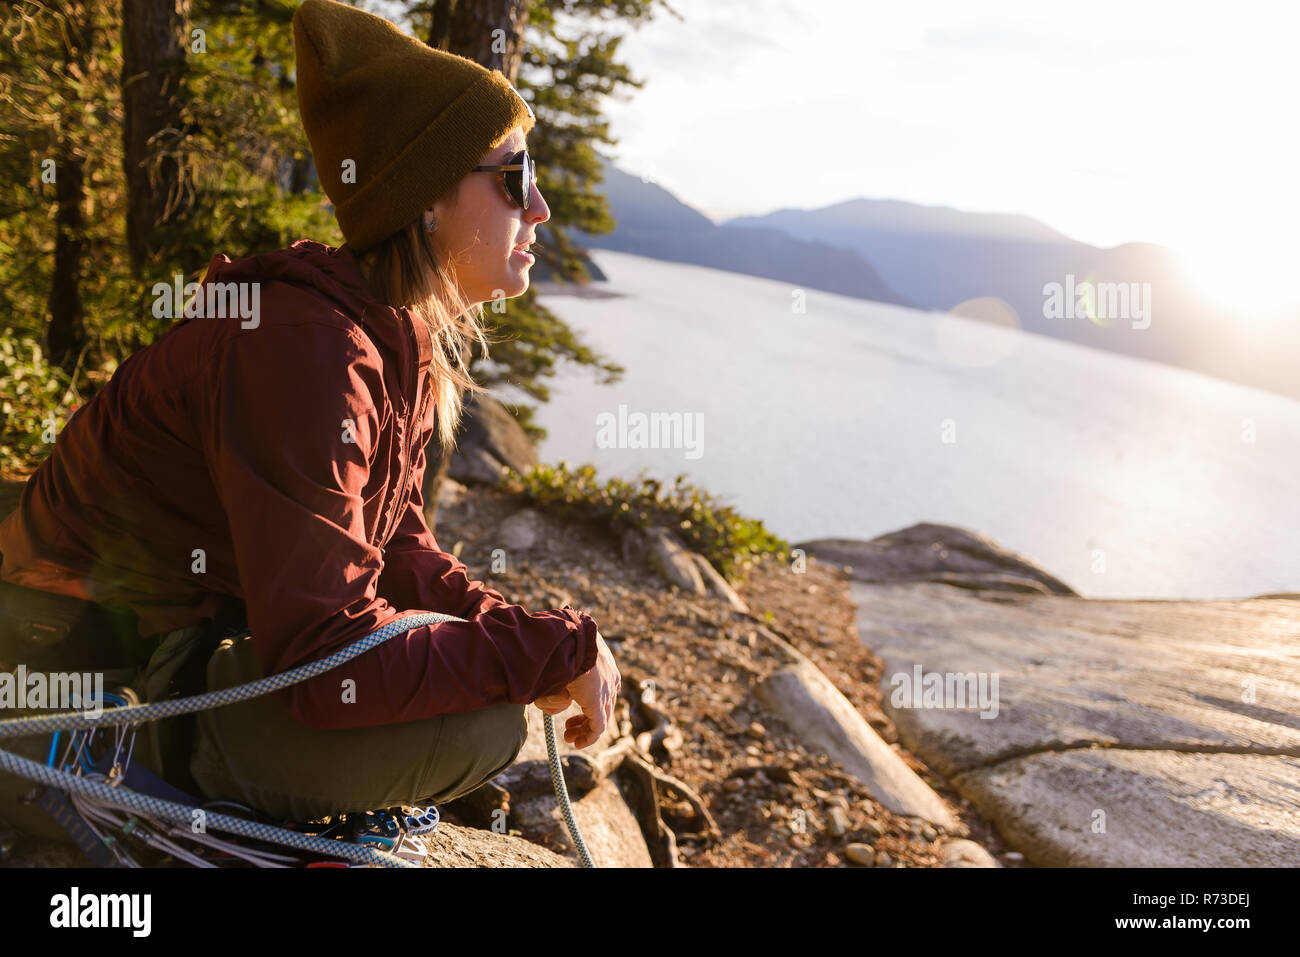 Rock climber enjoying sunset on Malamute, Squamish, Canada Stock Photo